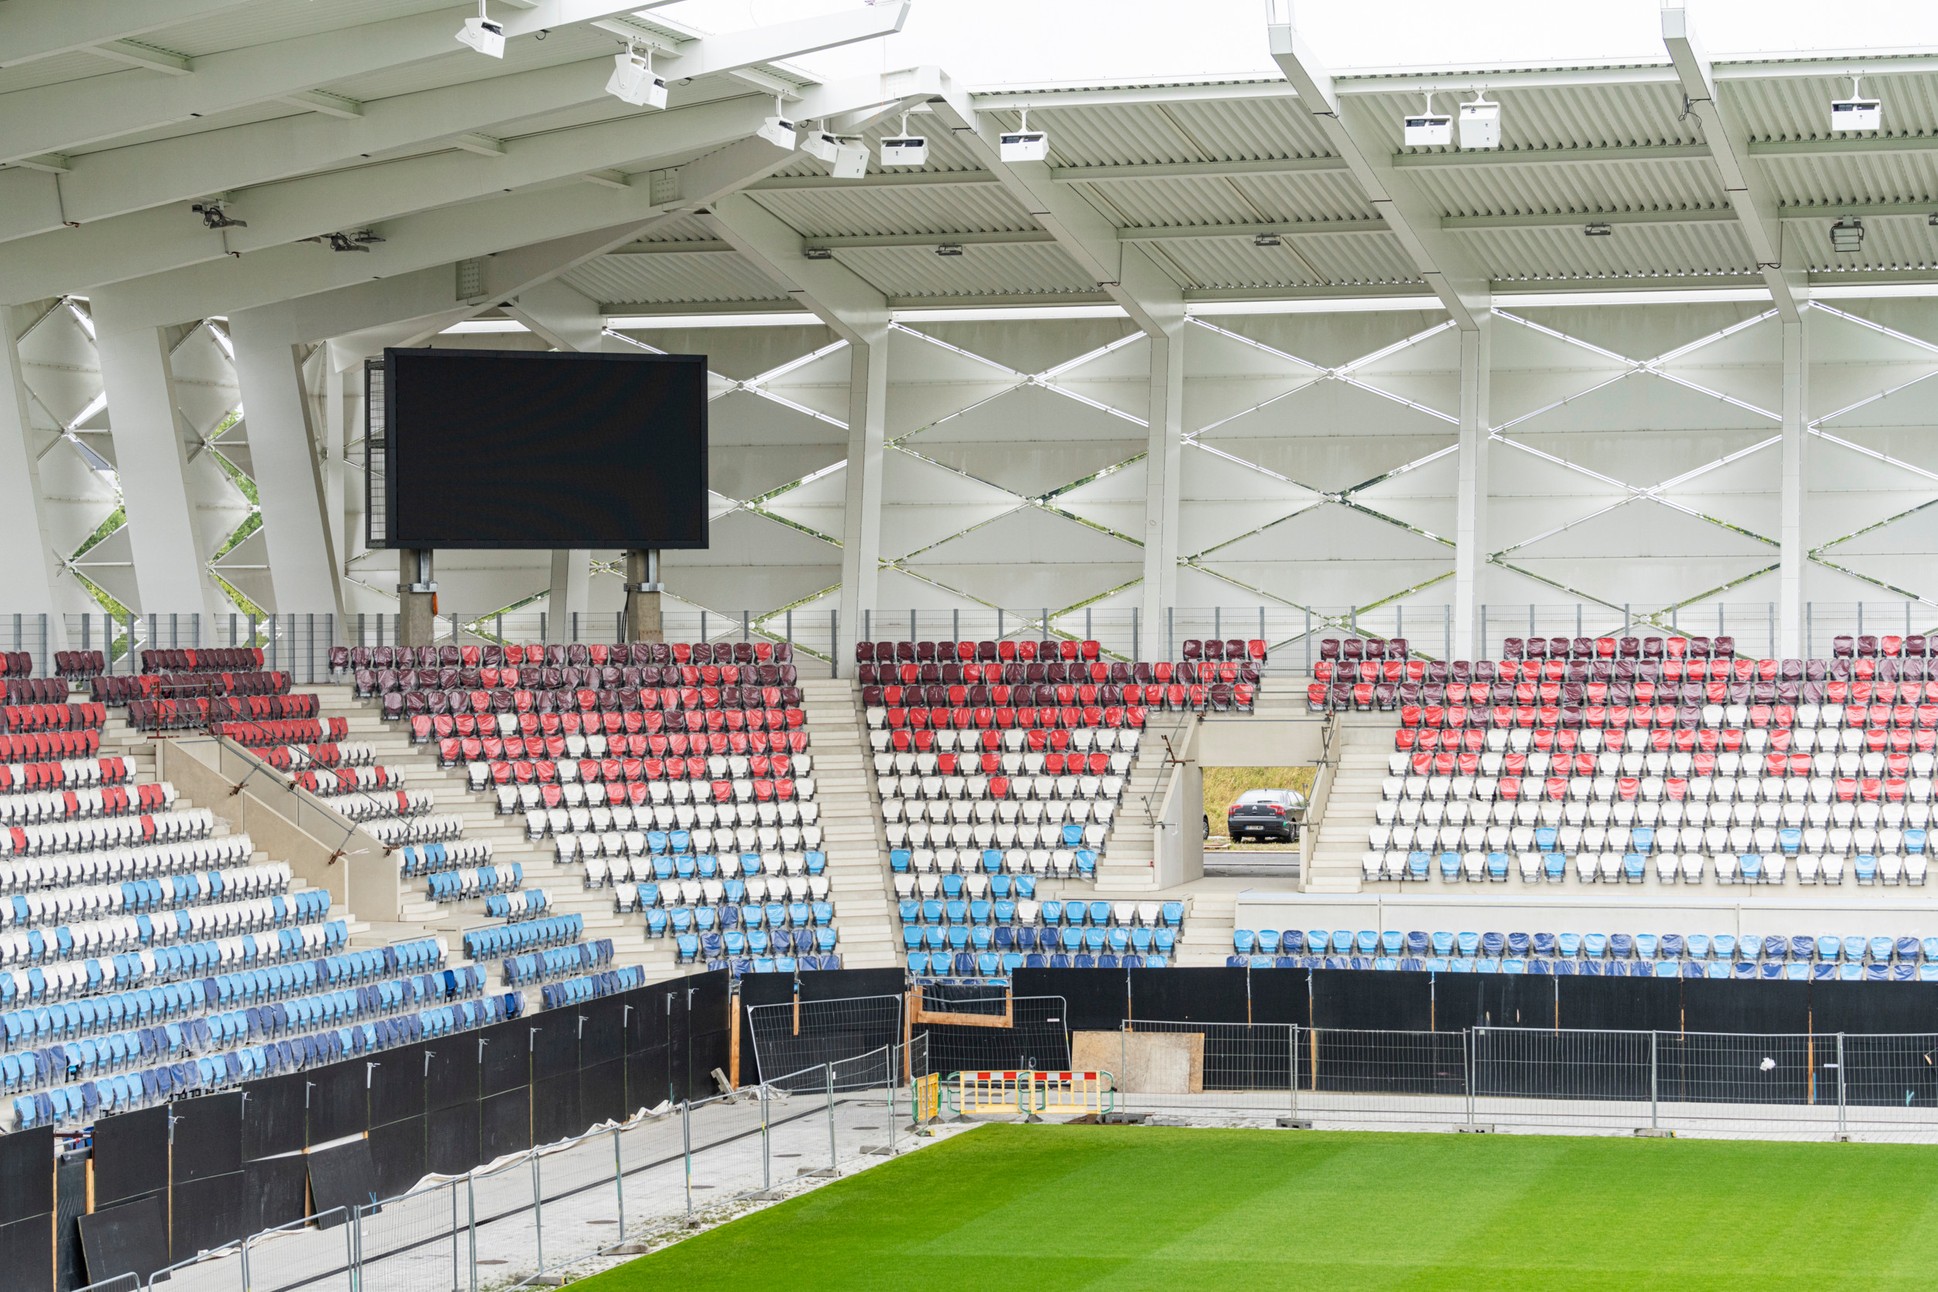 Daplast Seating stattet das Nationalstadion von Luxemburg mit Avatar-Sitzen aus